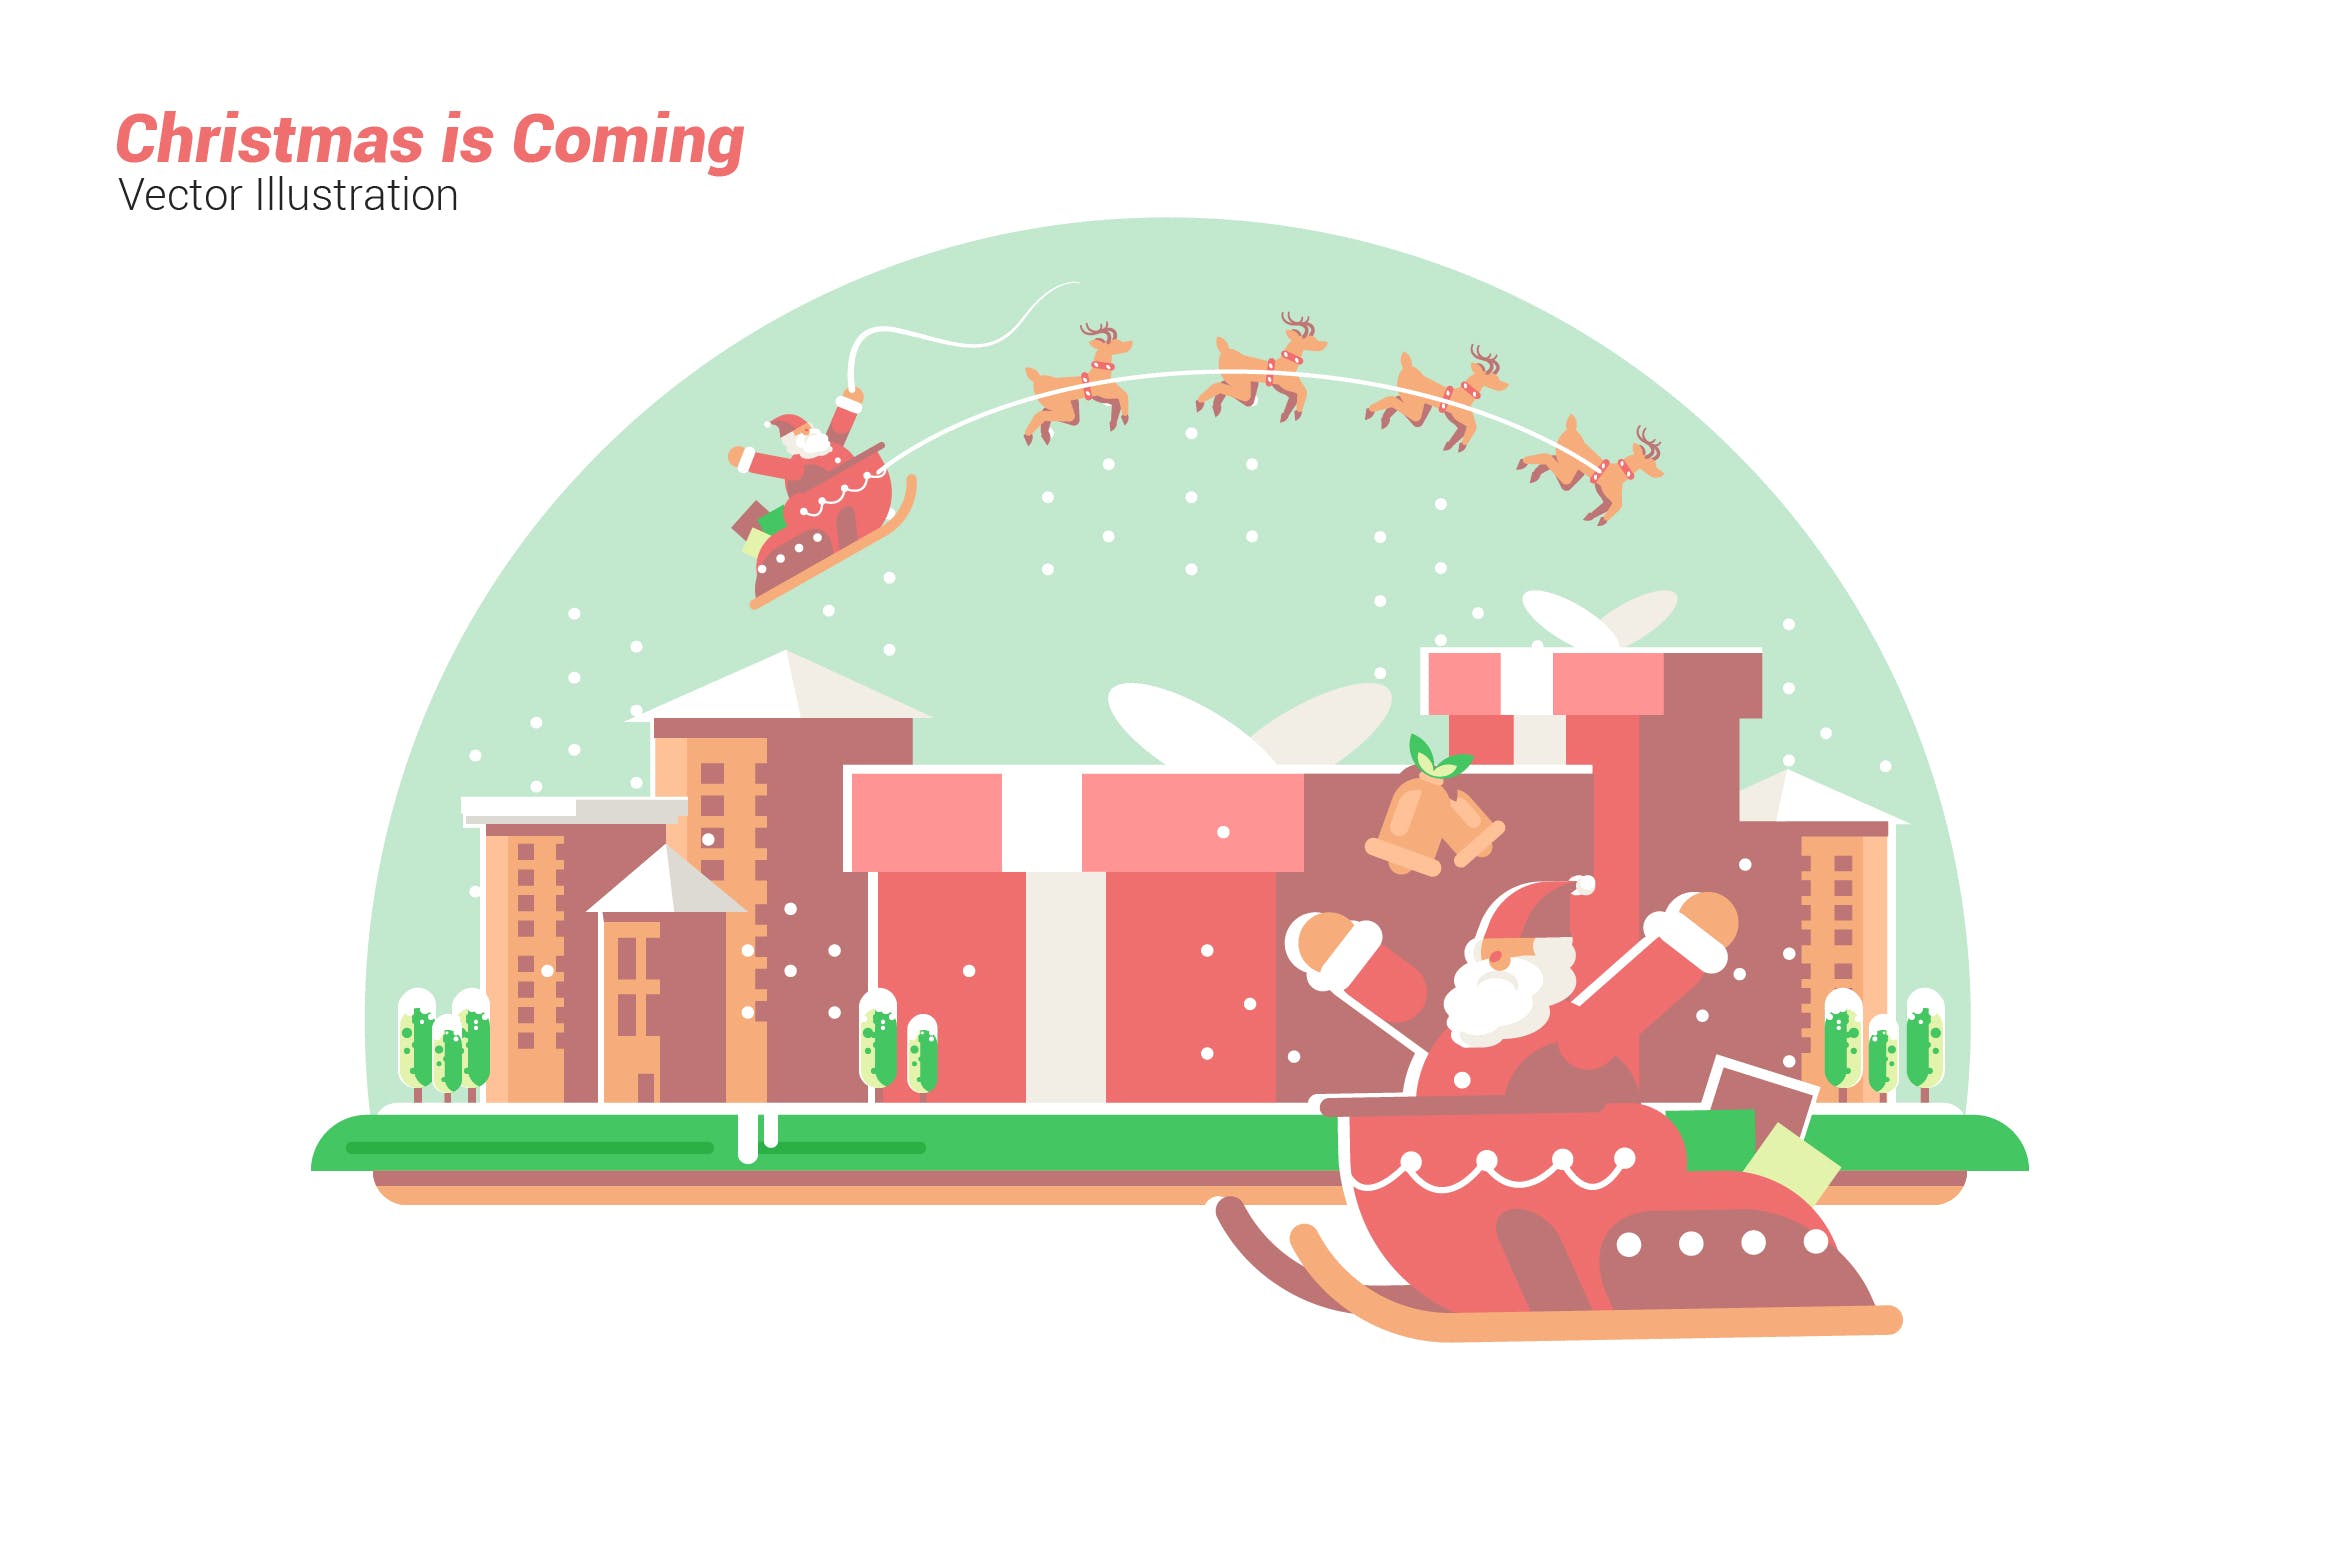 喜迎圣诞节到来矢量手绘插画素材 Christmas is Coming – Vector Illustration插图